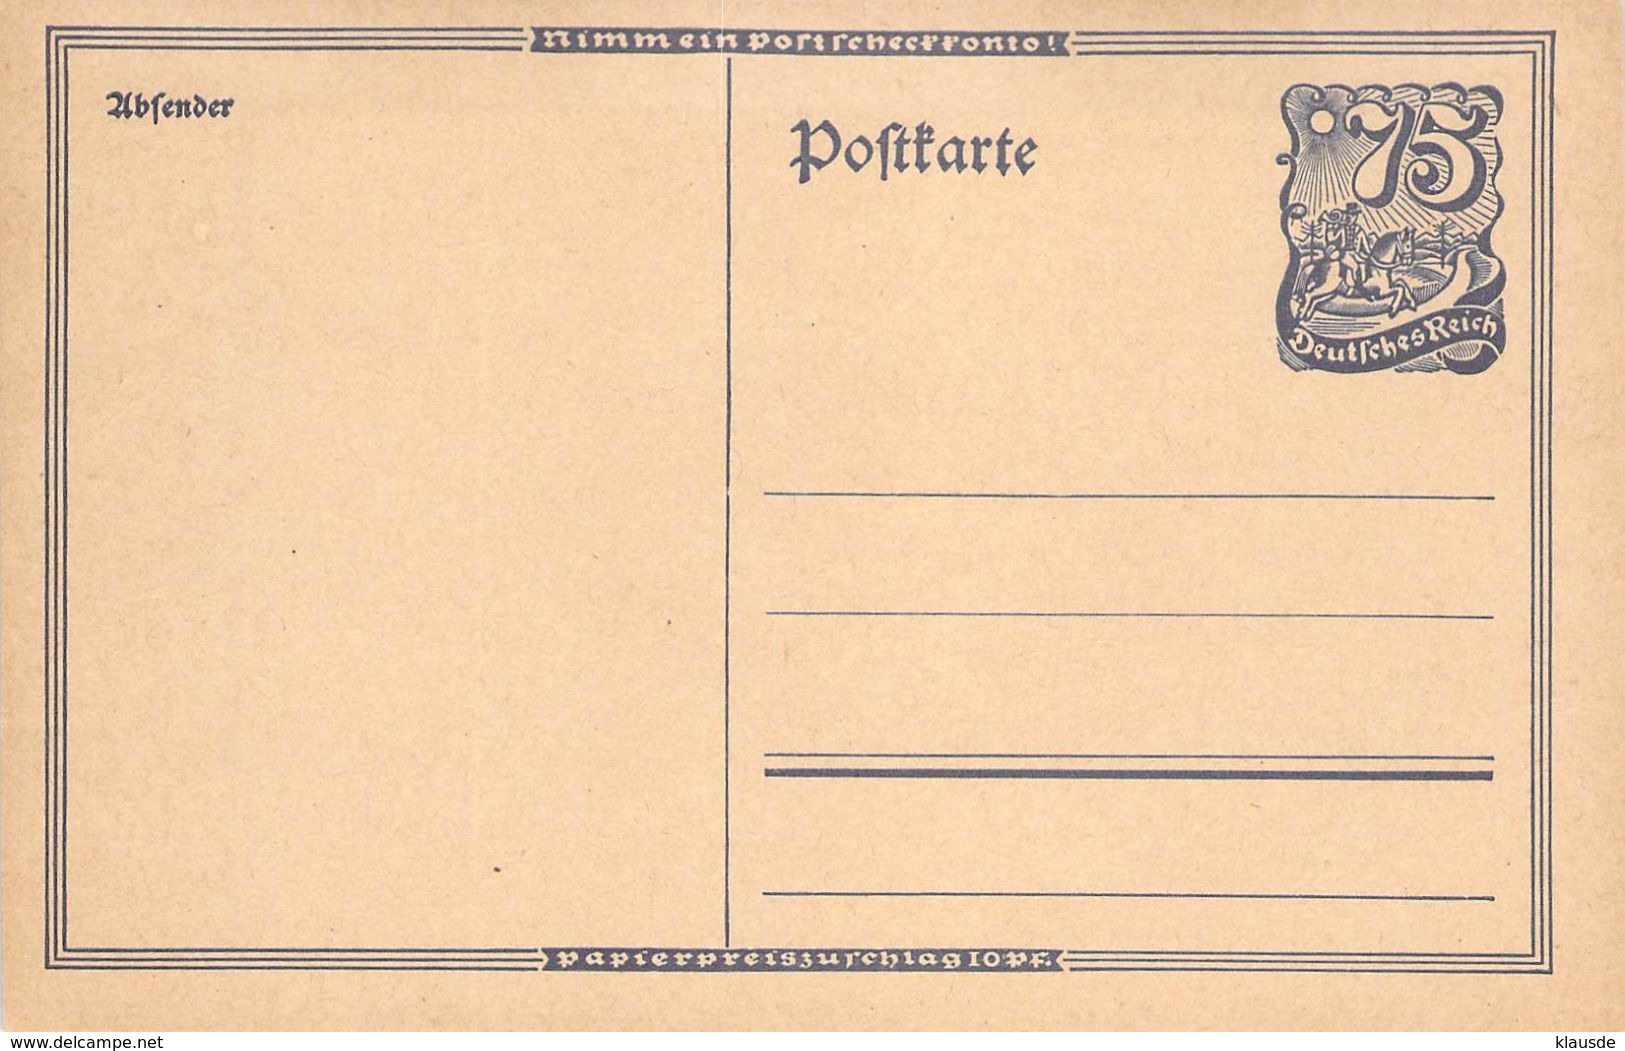 P146 Deutschland Deutsches Reich - Cartes Postales